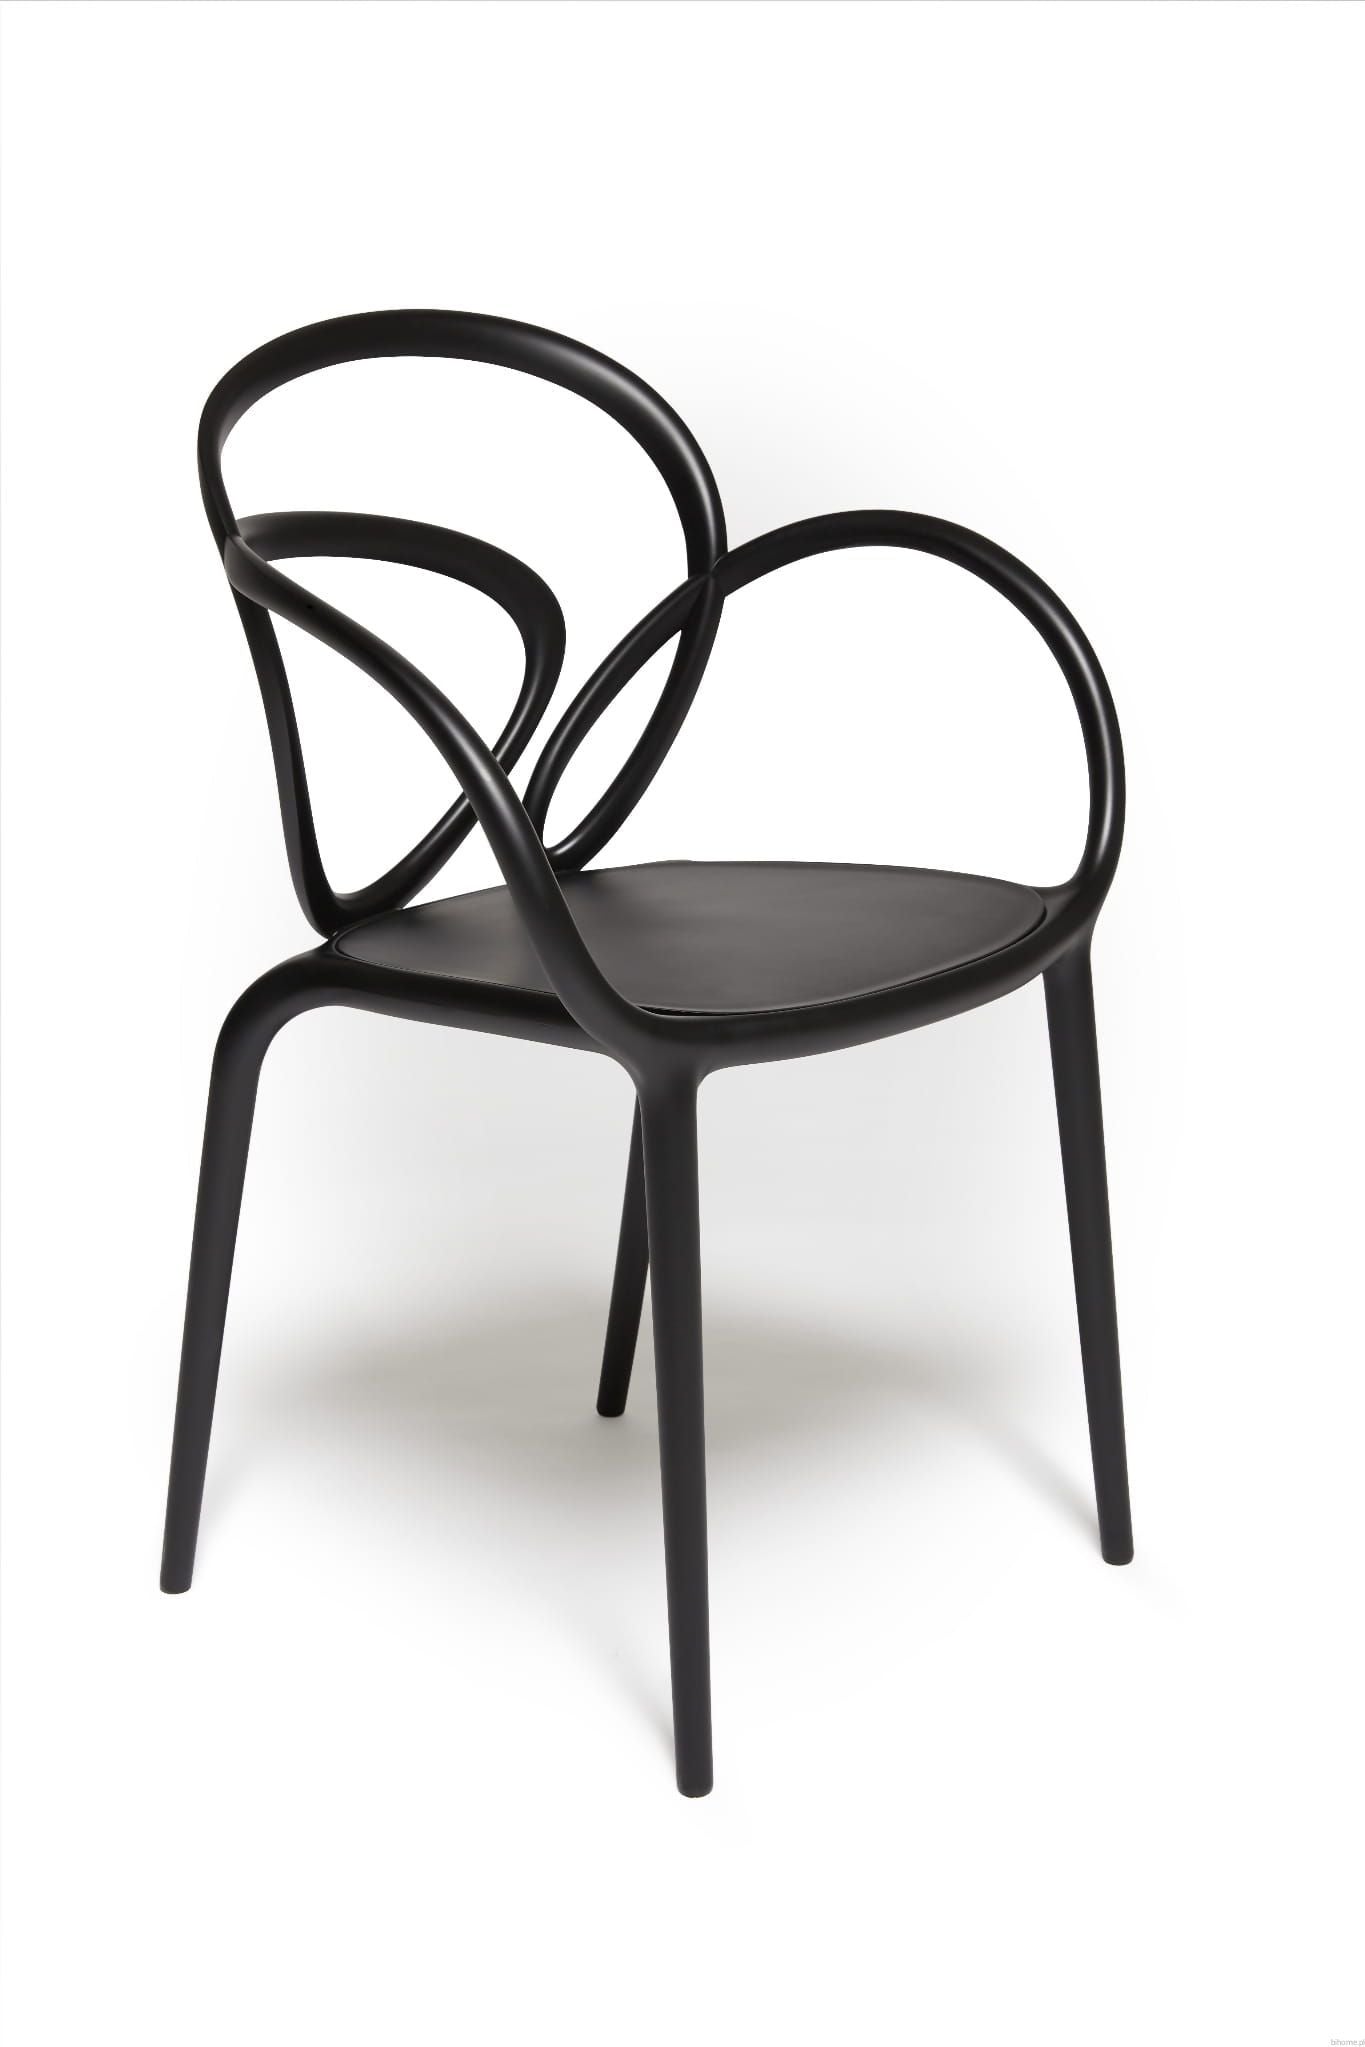 LOOP chair black - 2 pieces, QeeBoo, Eye on Design